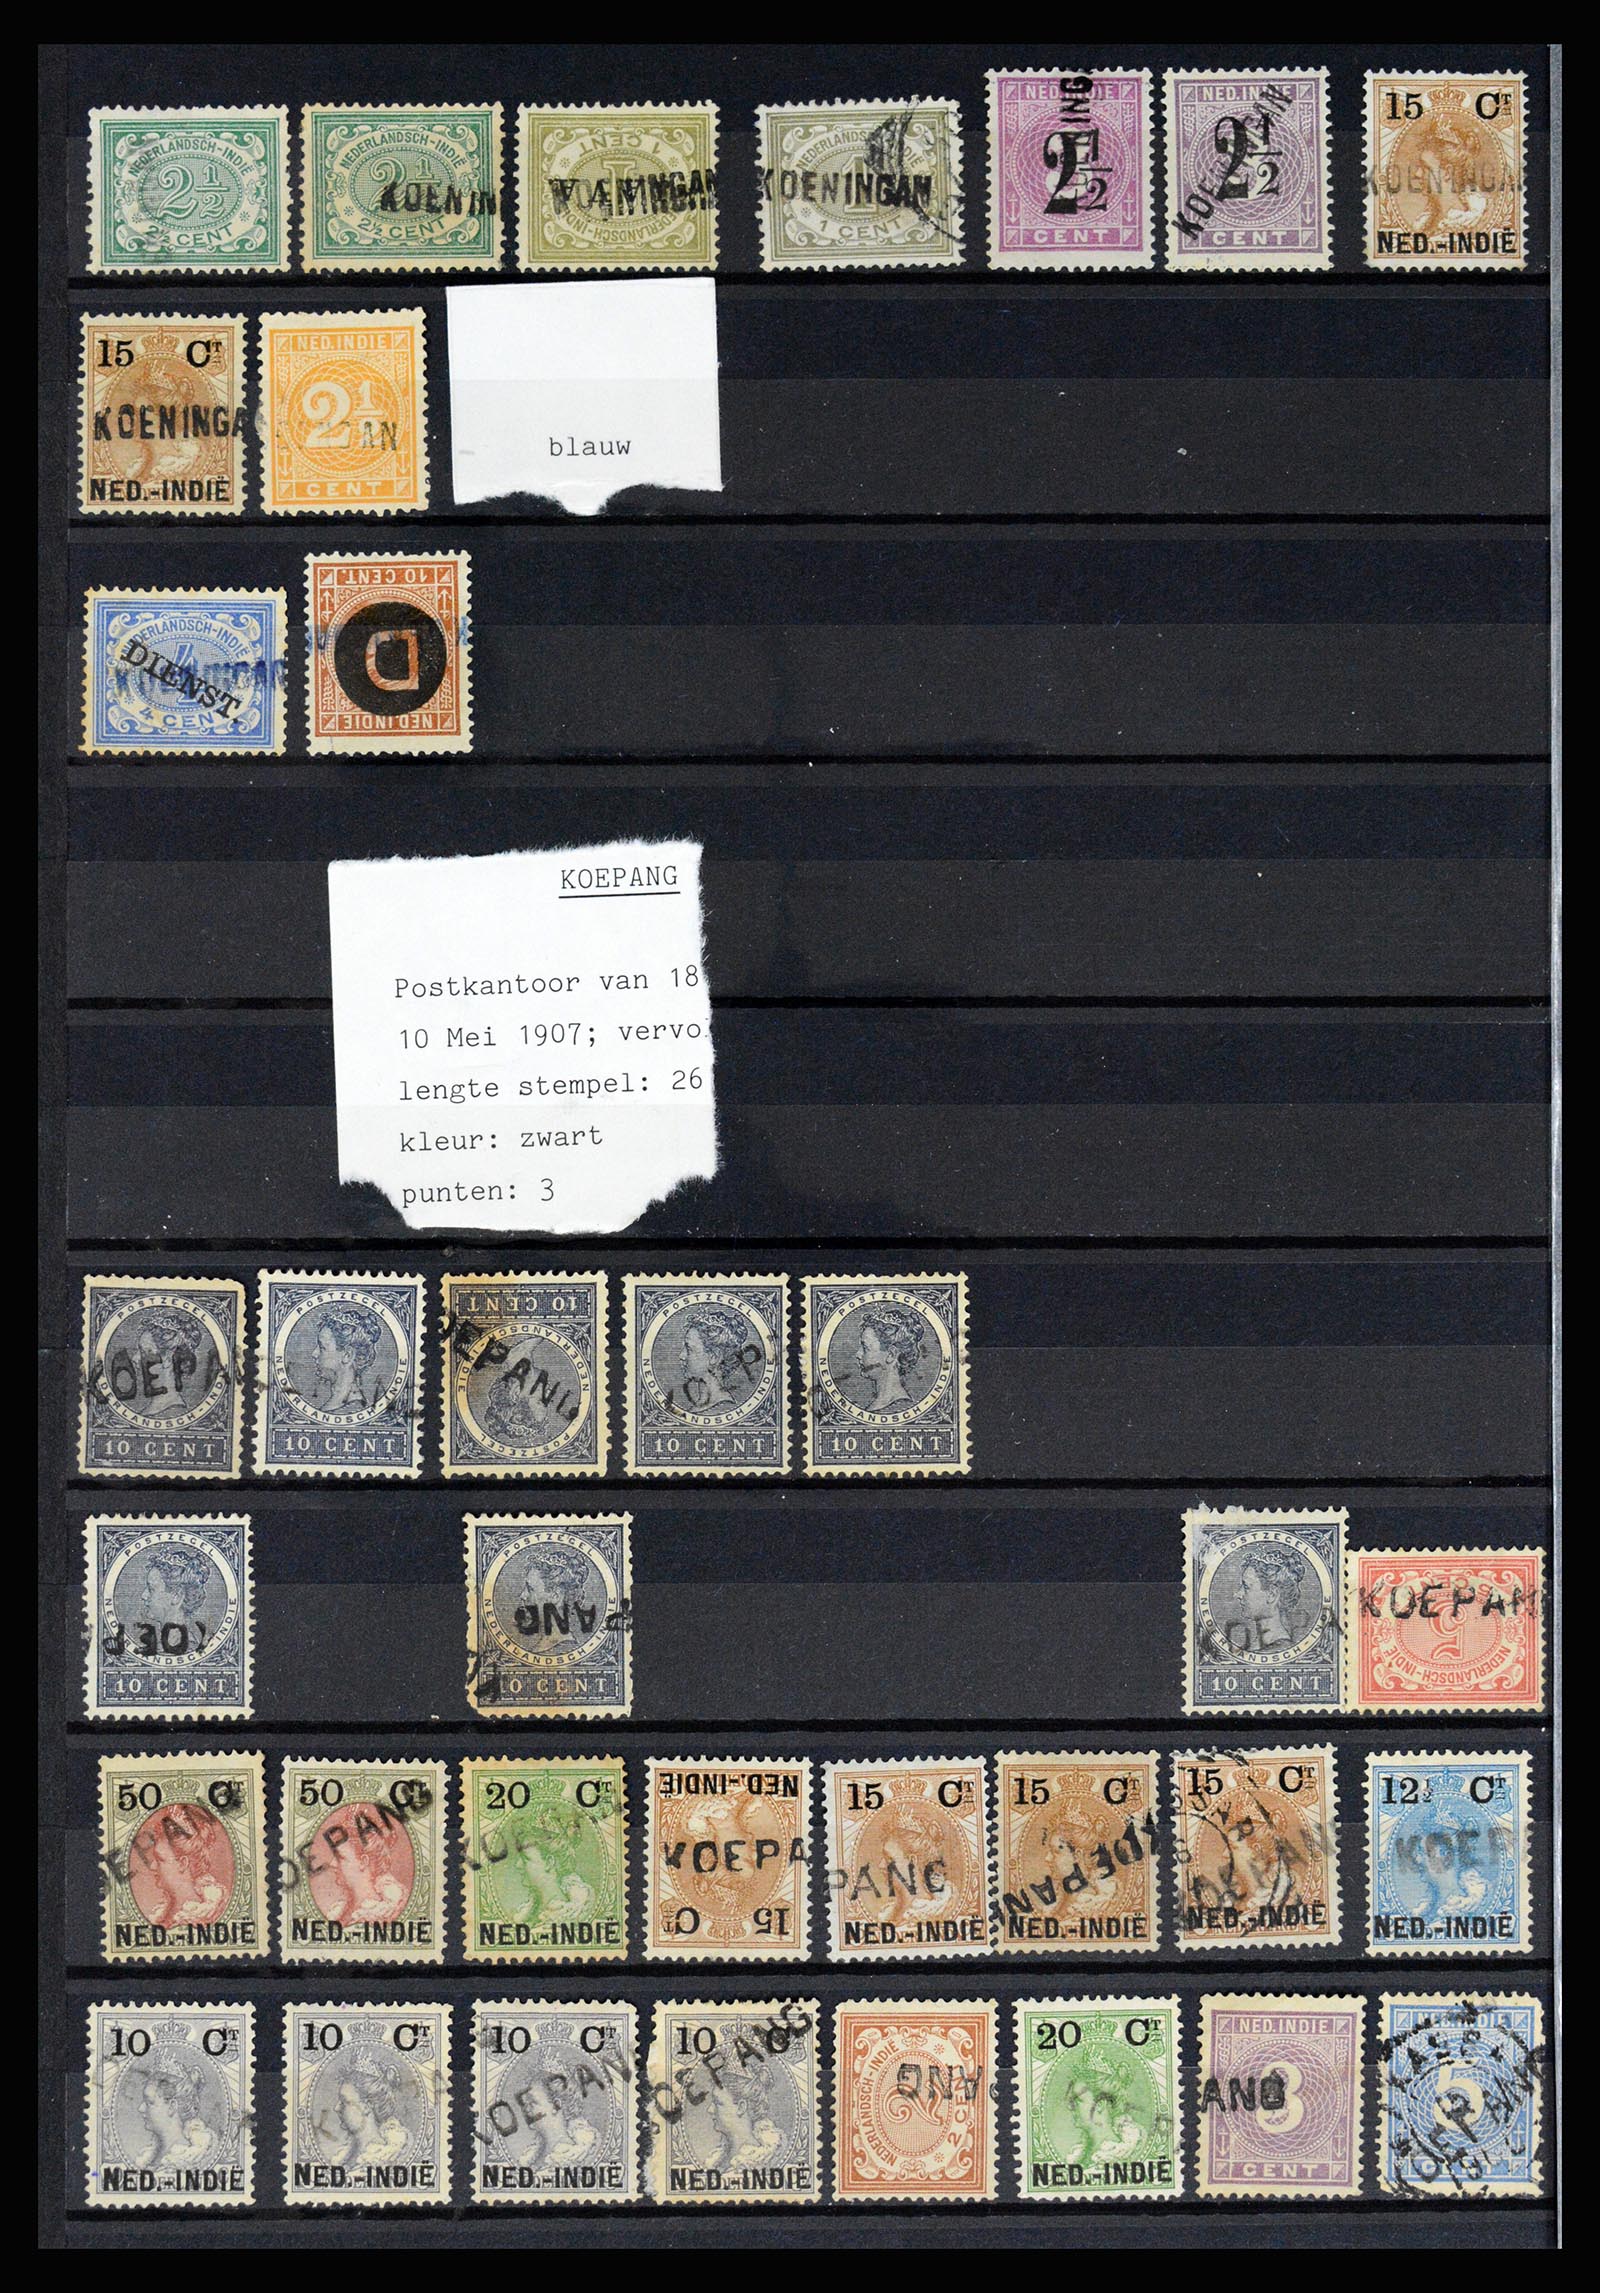 36512 034 - Stamp collection 36512 Nederlands Indië stempels 1872-1930.